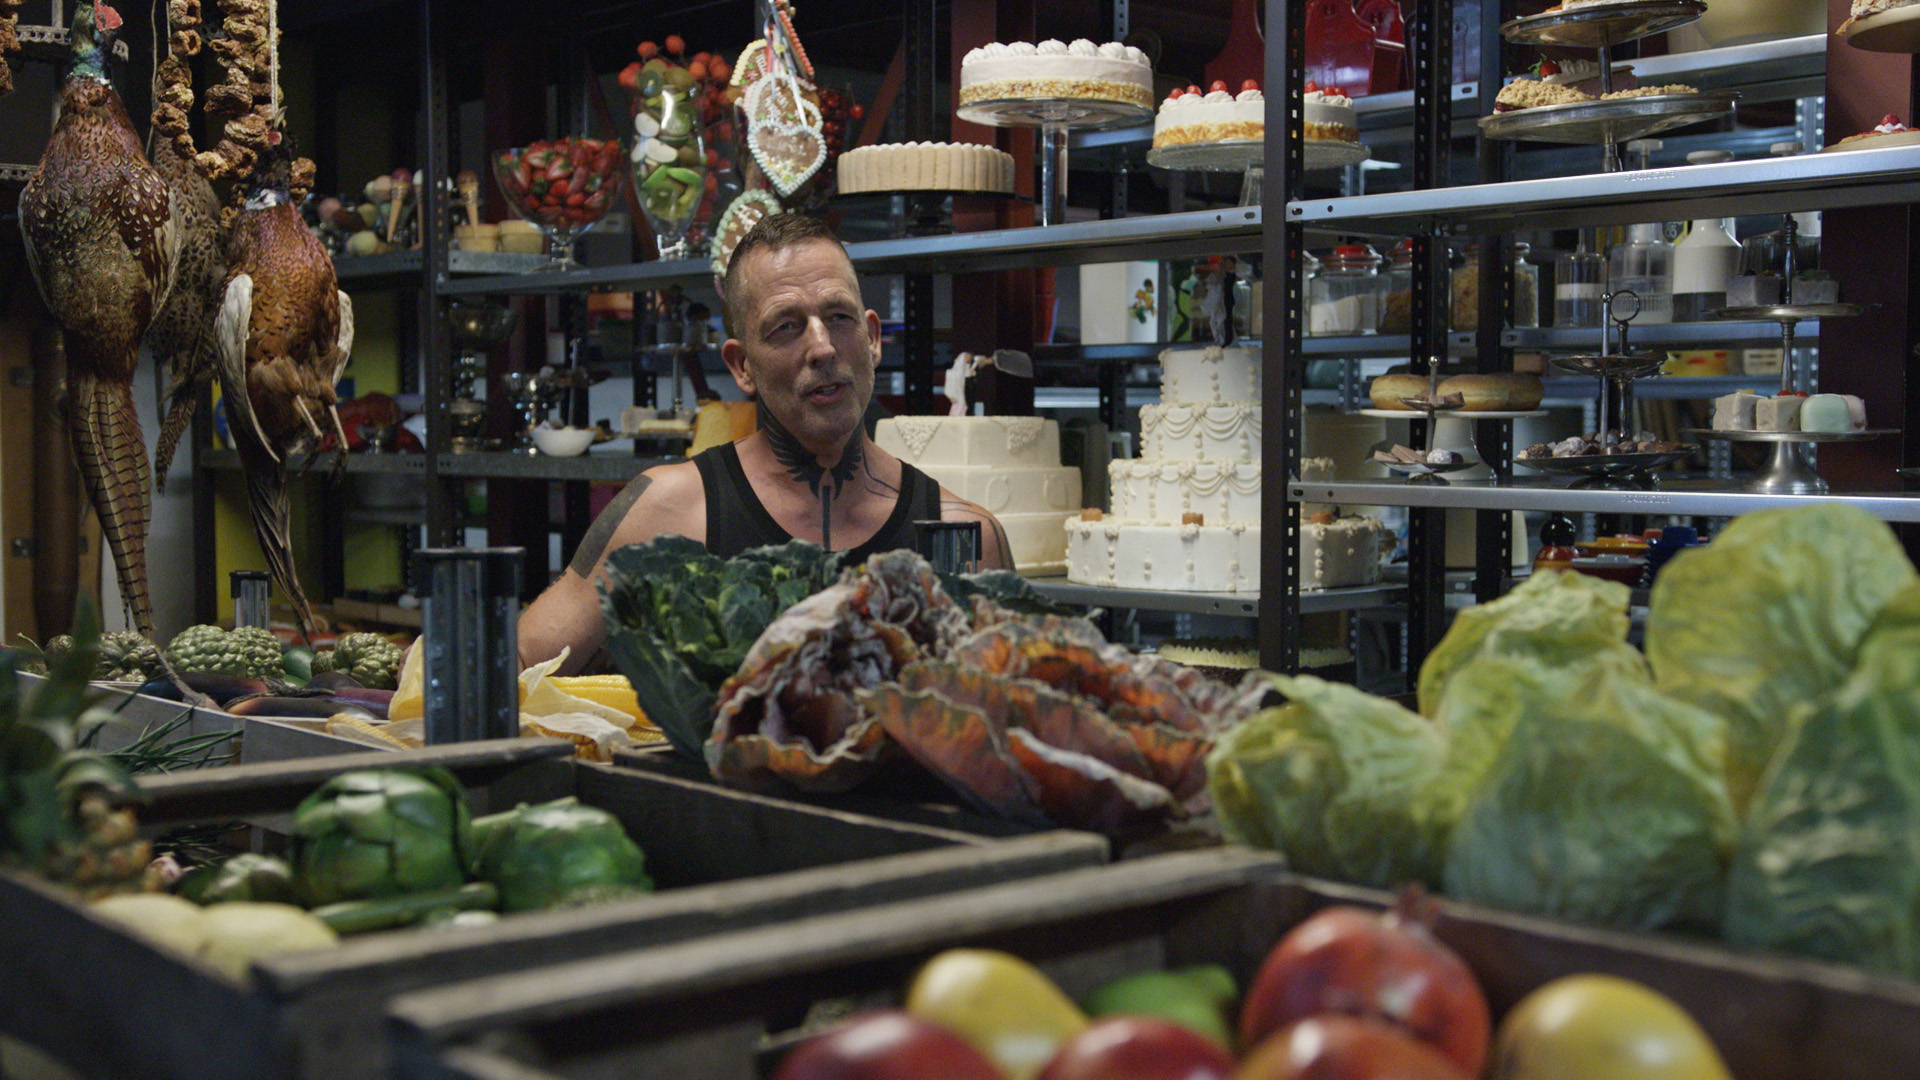 Ein Mann in Muscleshirt und mit vielen Tätowierungen steht inmitten prall gefüllter Regale mit Essens-Requisiten. Vor ihm liegt Gemüse, neben ihm hängen zwei Fasane, im Hintergrund Torten.